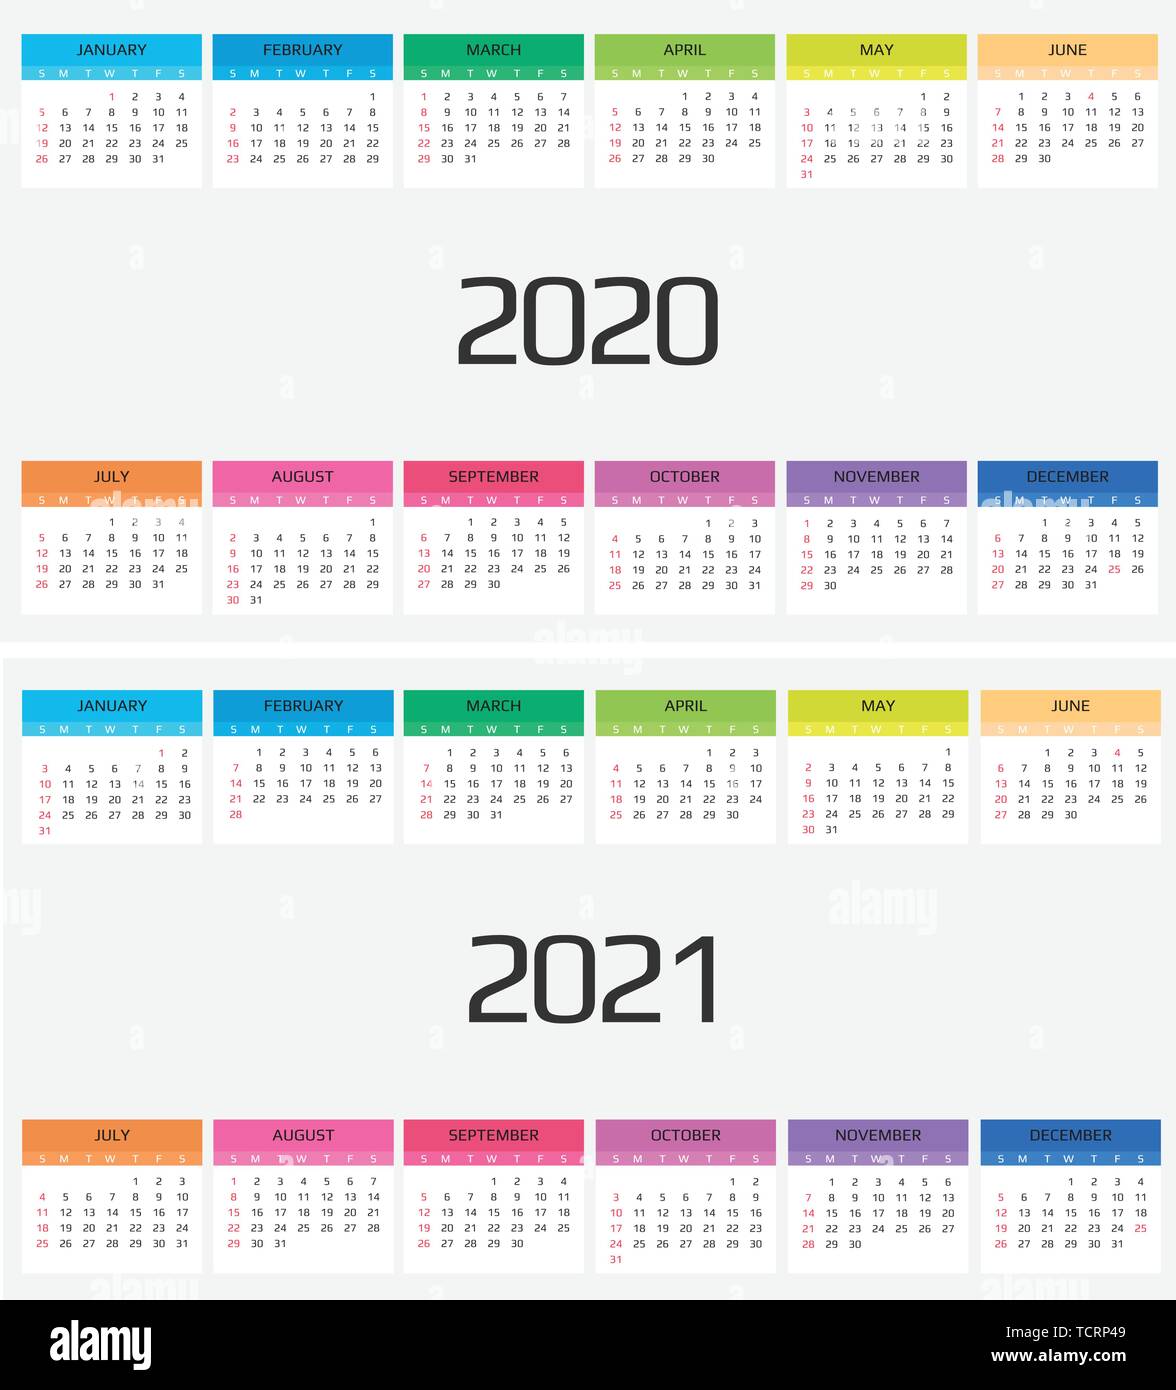 Kalender 2020 und 2021 Vorlage. 12 Monate. gehören Urlaub Veranstaltung  Stock-Vektorgrafik - Alamy